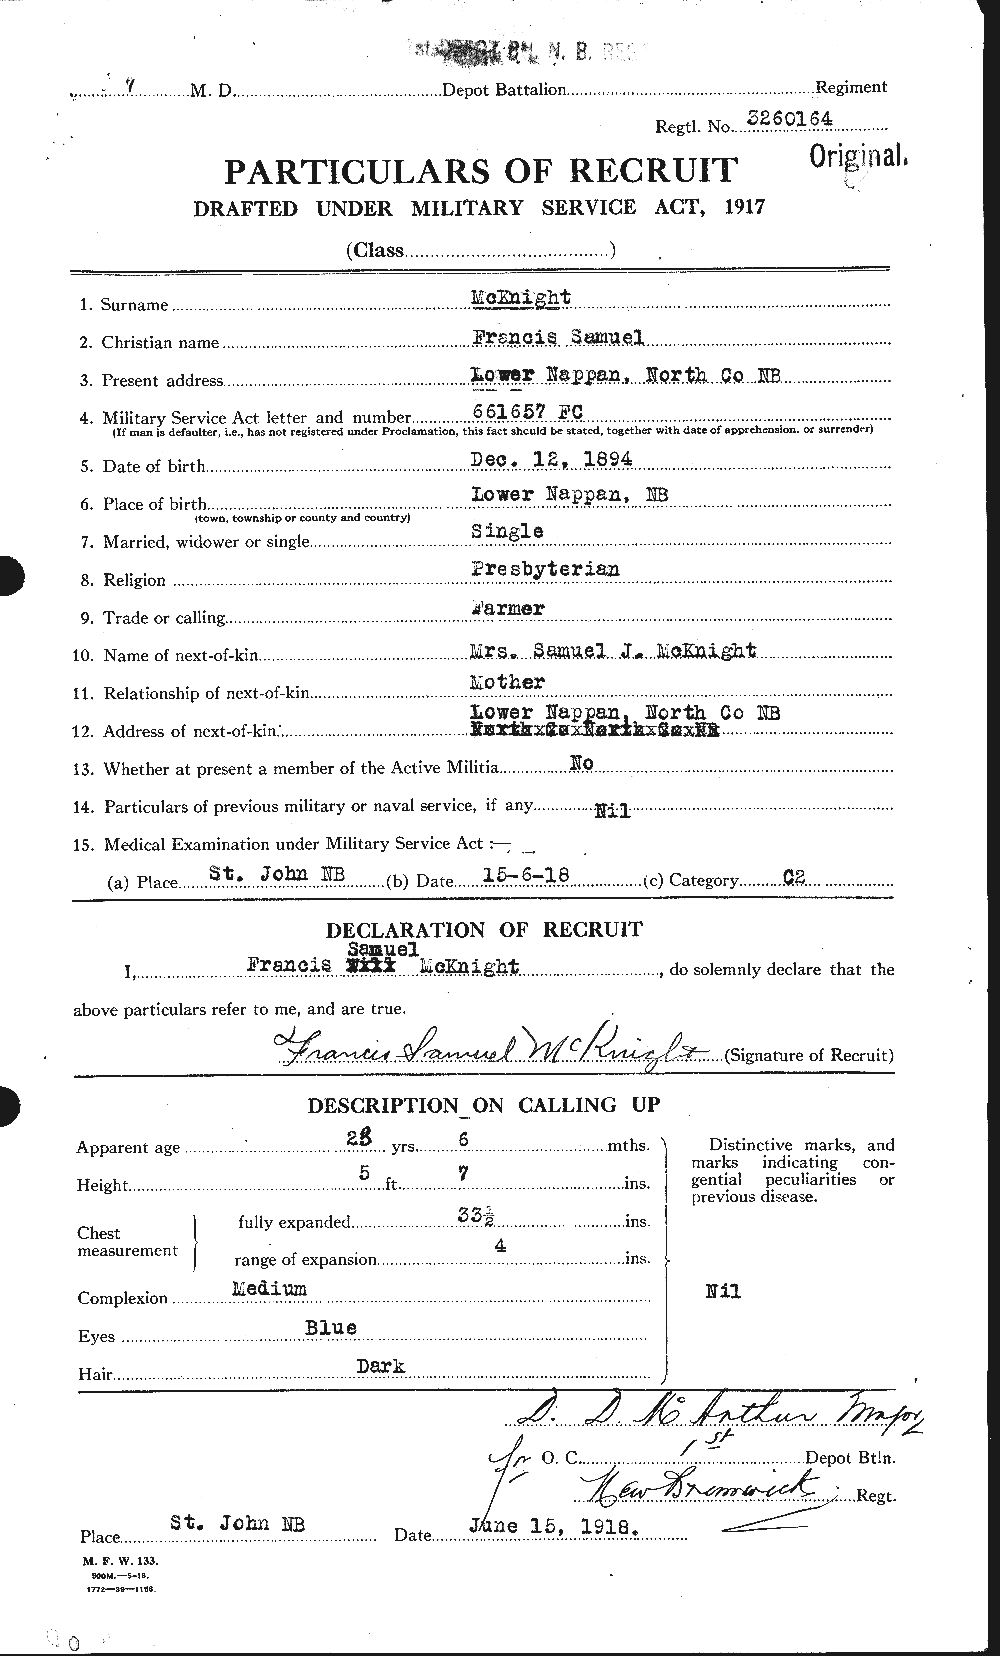 Dossiers du Personnel de la Première Guerre mondiale - CEC 530703a